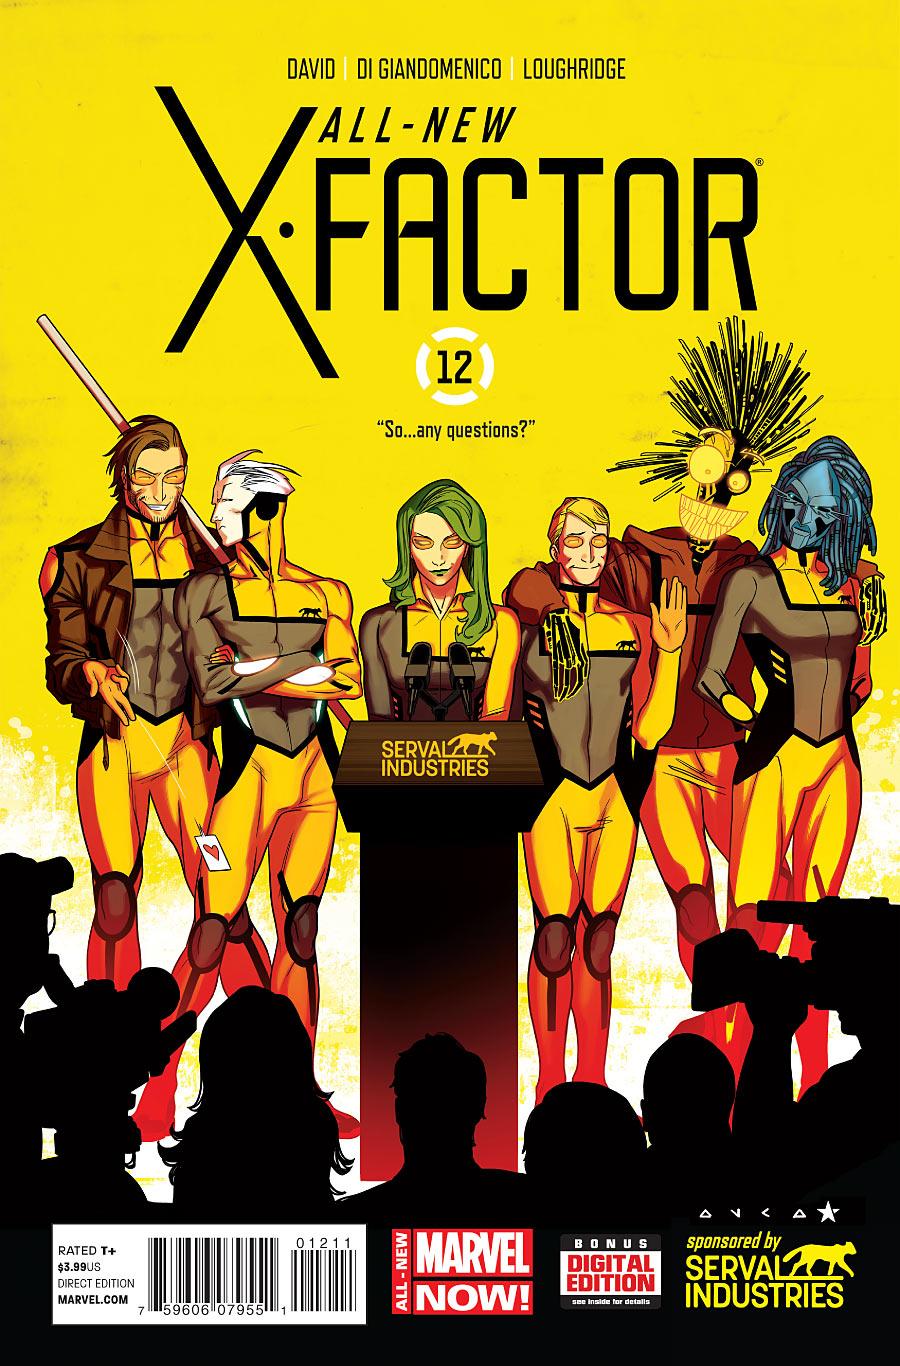 All-New X-Factor Vol. 1 #12